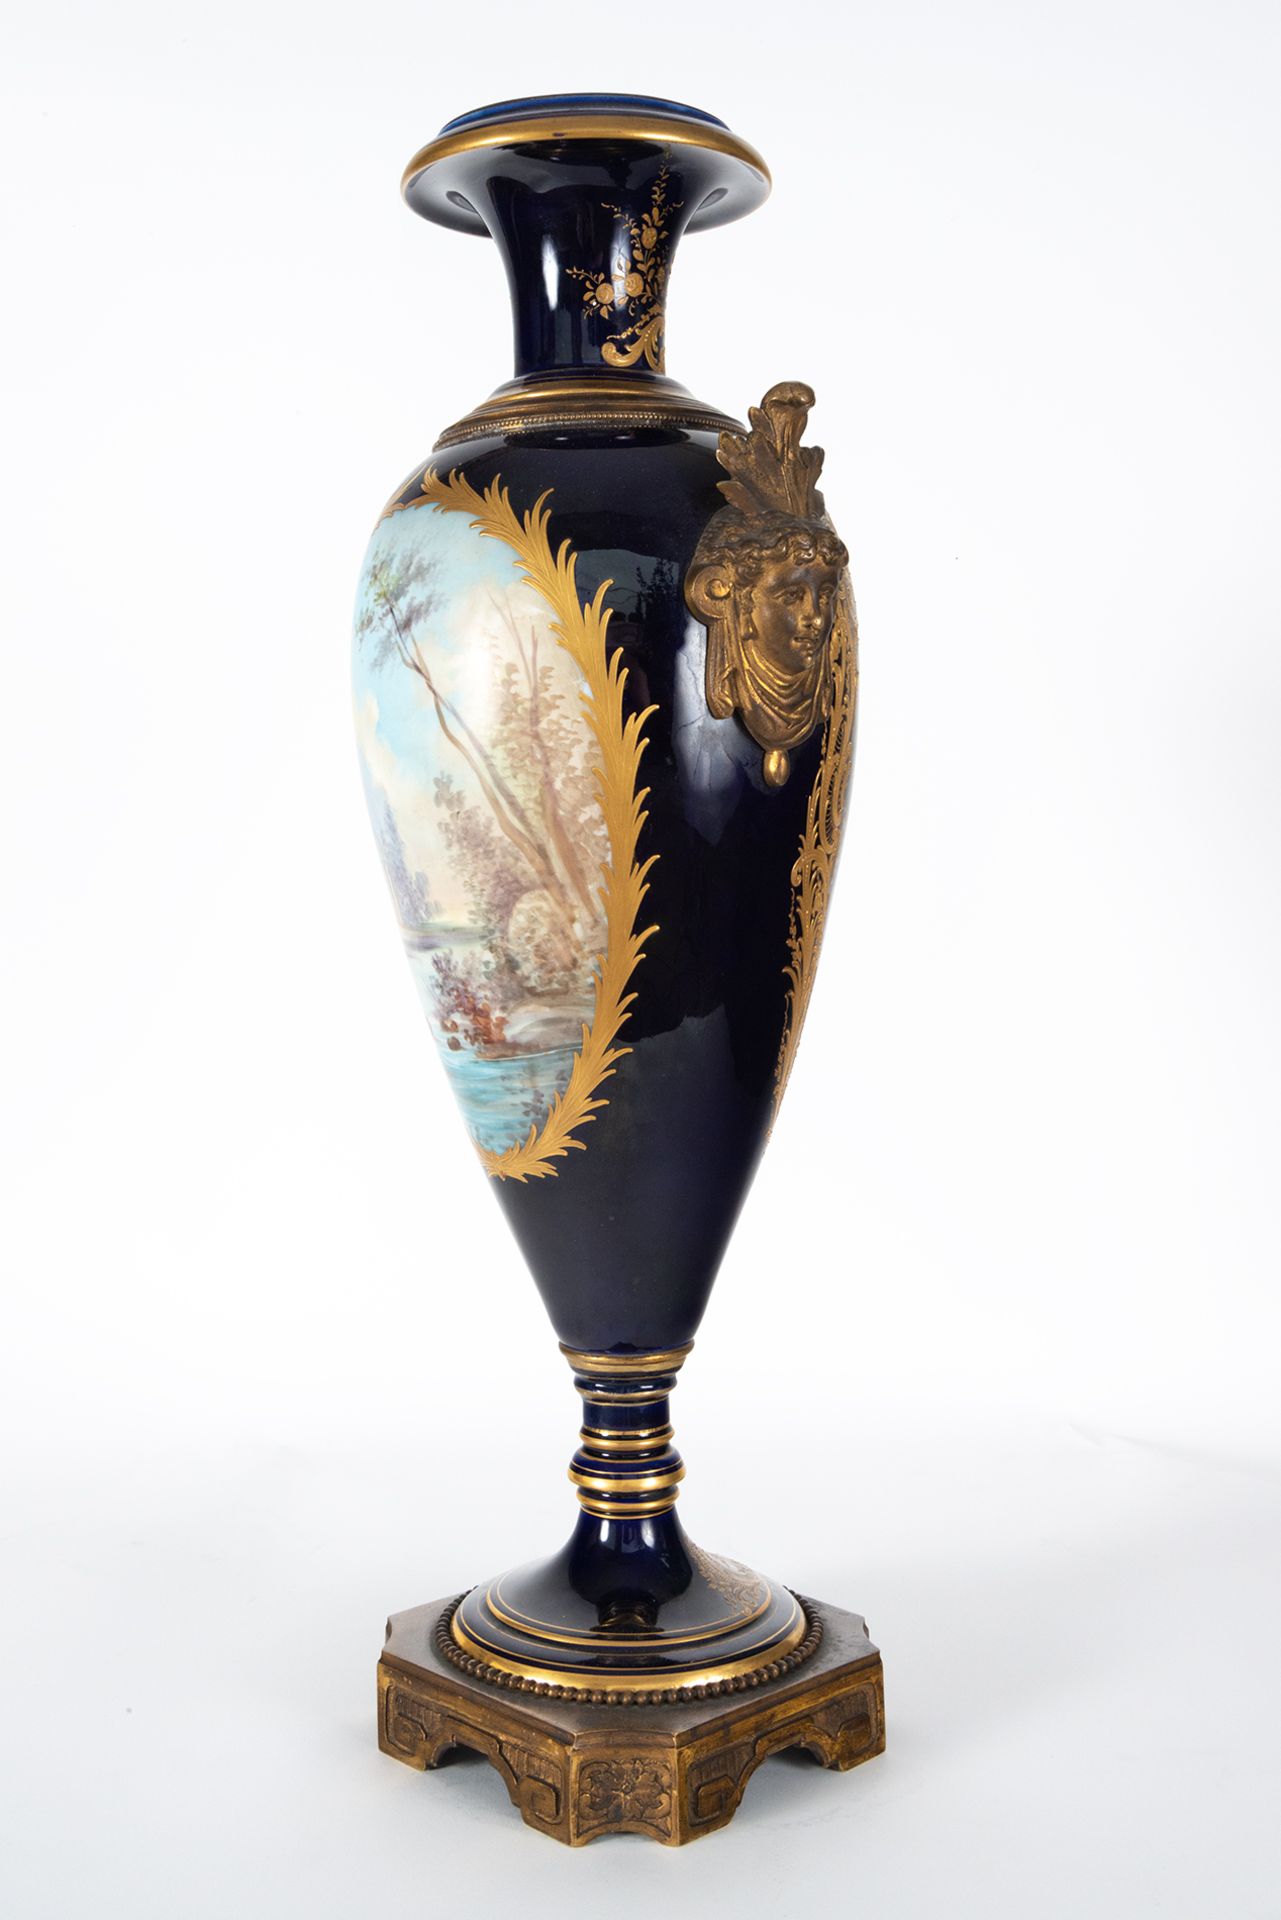 Pair of Svres Vases, 19th century French school - Image 13 of 15